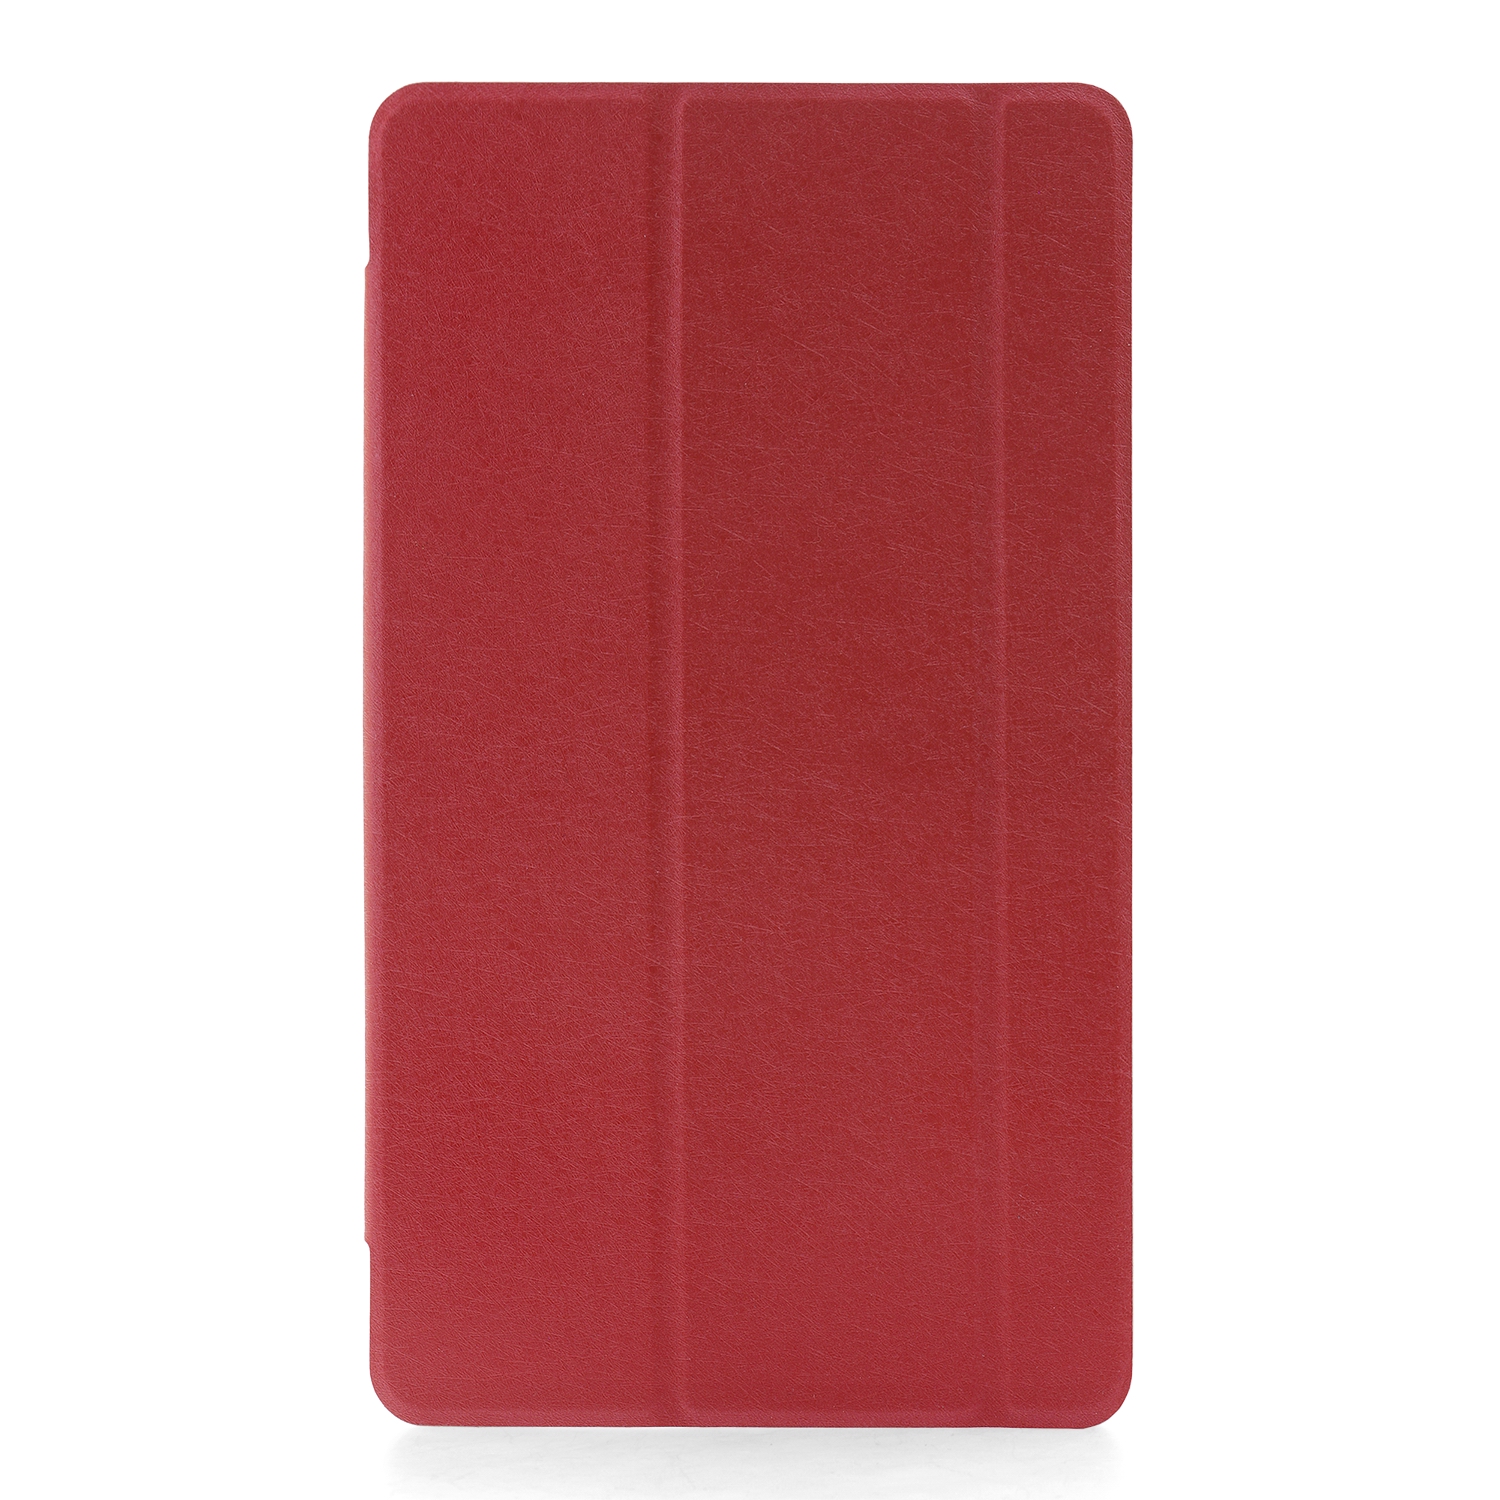 Чехол откидной Huawei MediaPad T3 8.0 Trans Cover красный